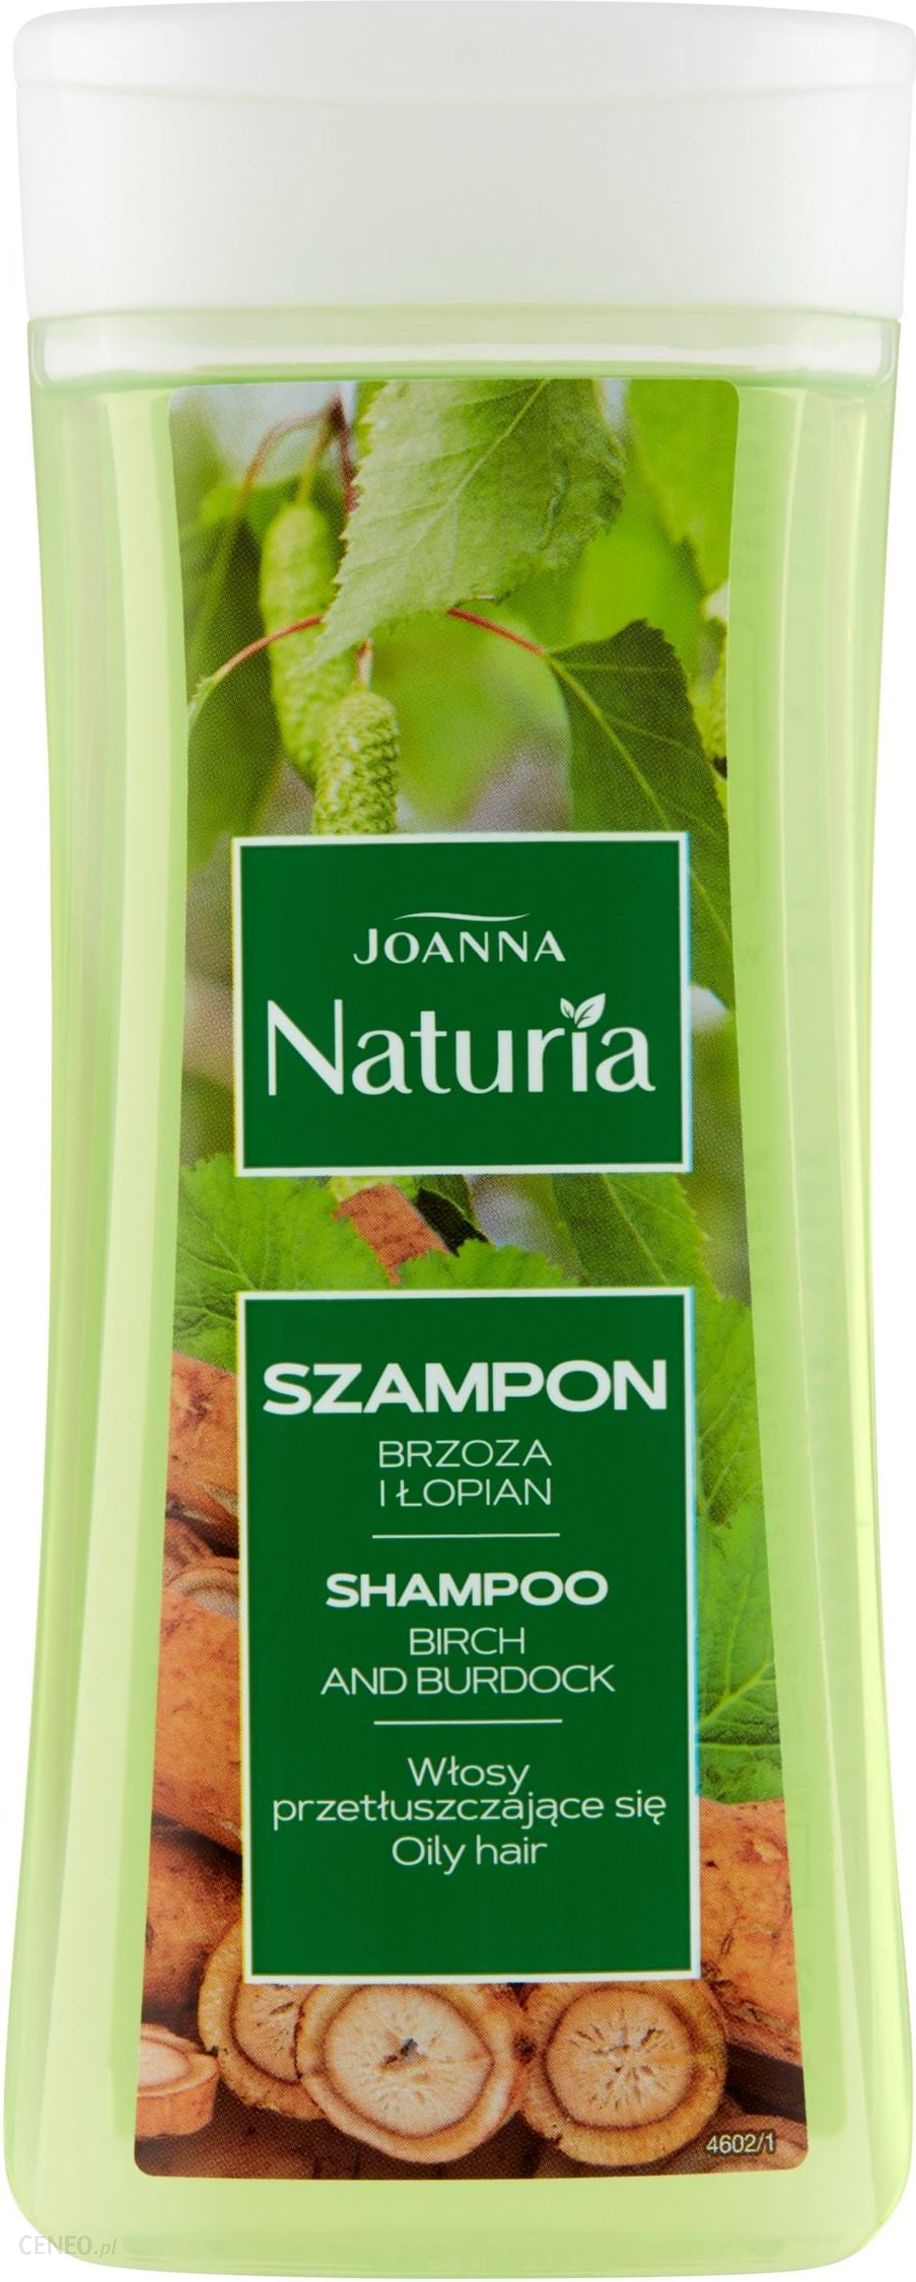 szampon joanna naturia do włosów przetluszczajacych